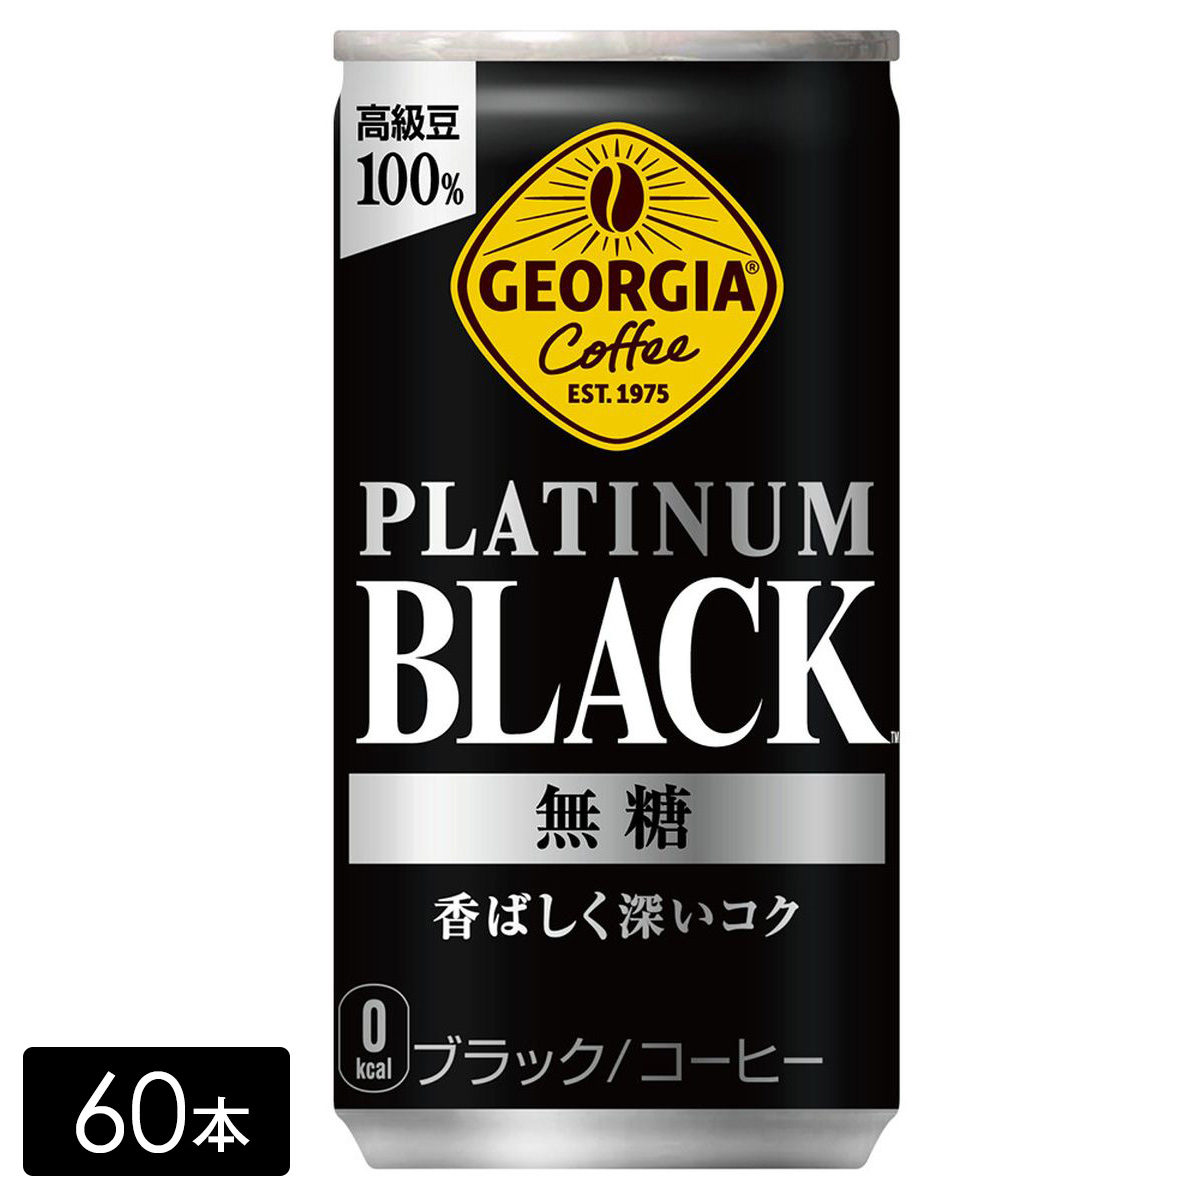 [送料無料]ジョージア プラチナムブラック 185g缶×60本(30本×2箱) 缶コーヒー PLATINUM BLACK ケース売り まとめ買い